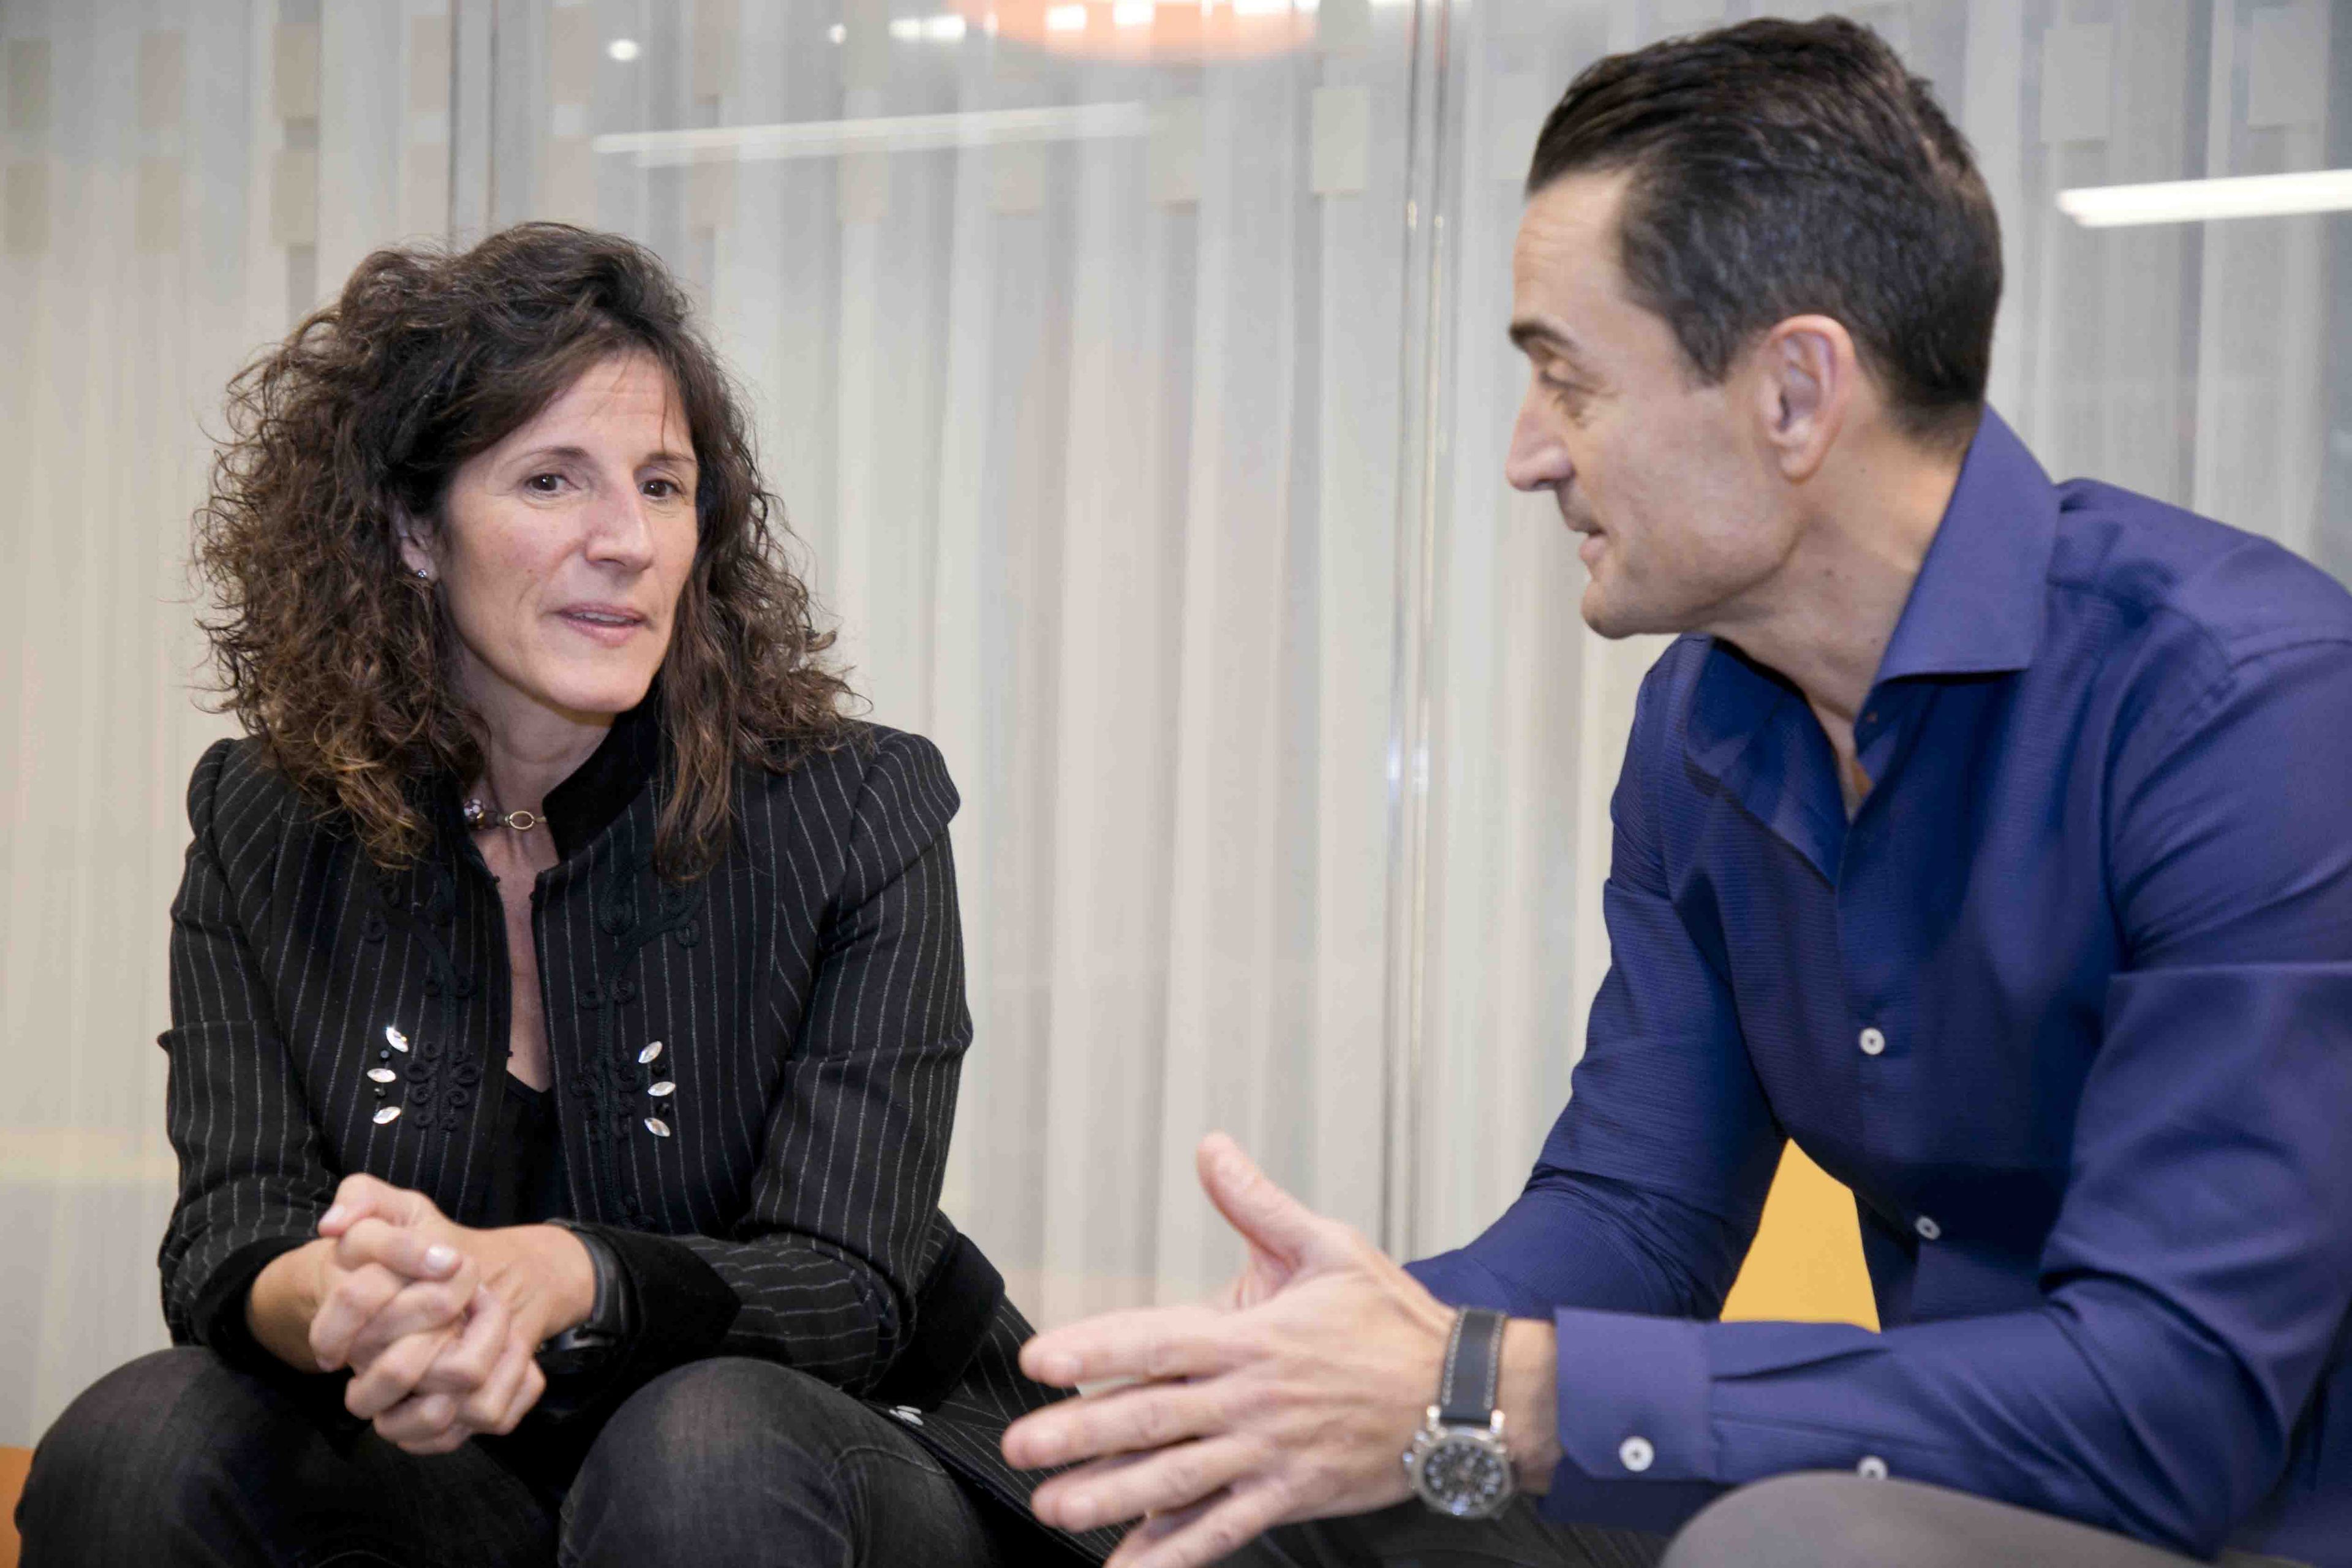 Ester García Cosín (directora general de Havas Media Group España) junto con Manuél del Campo (CEO de Axel Springer España)